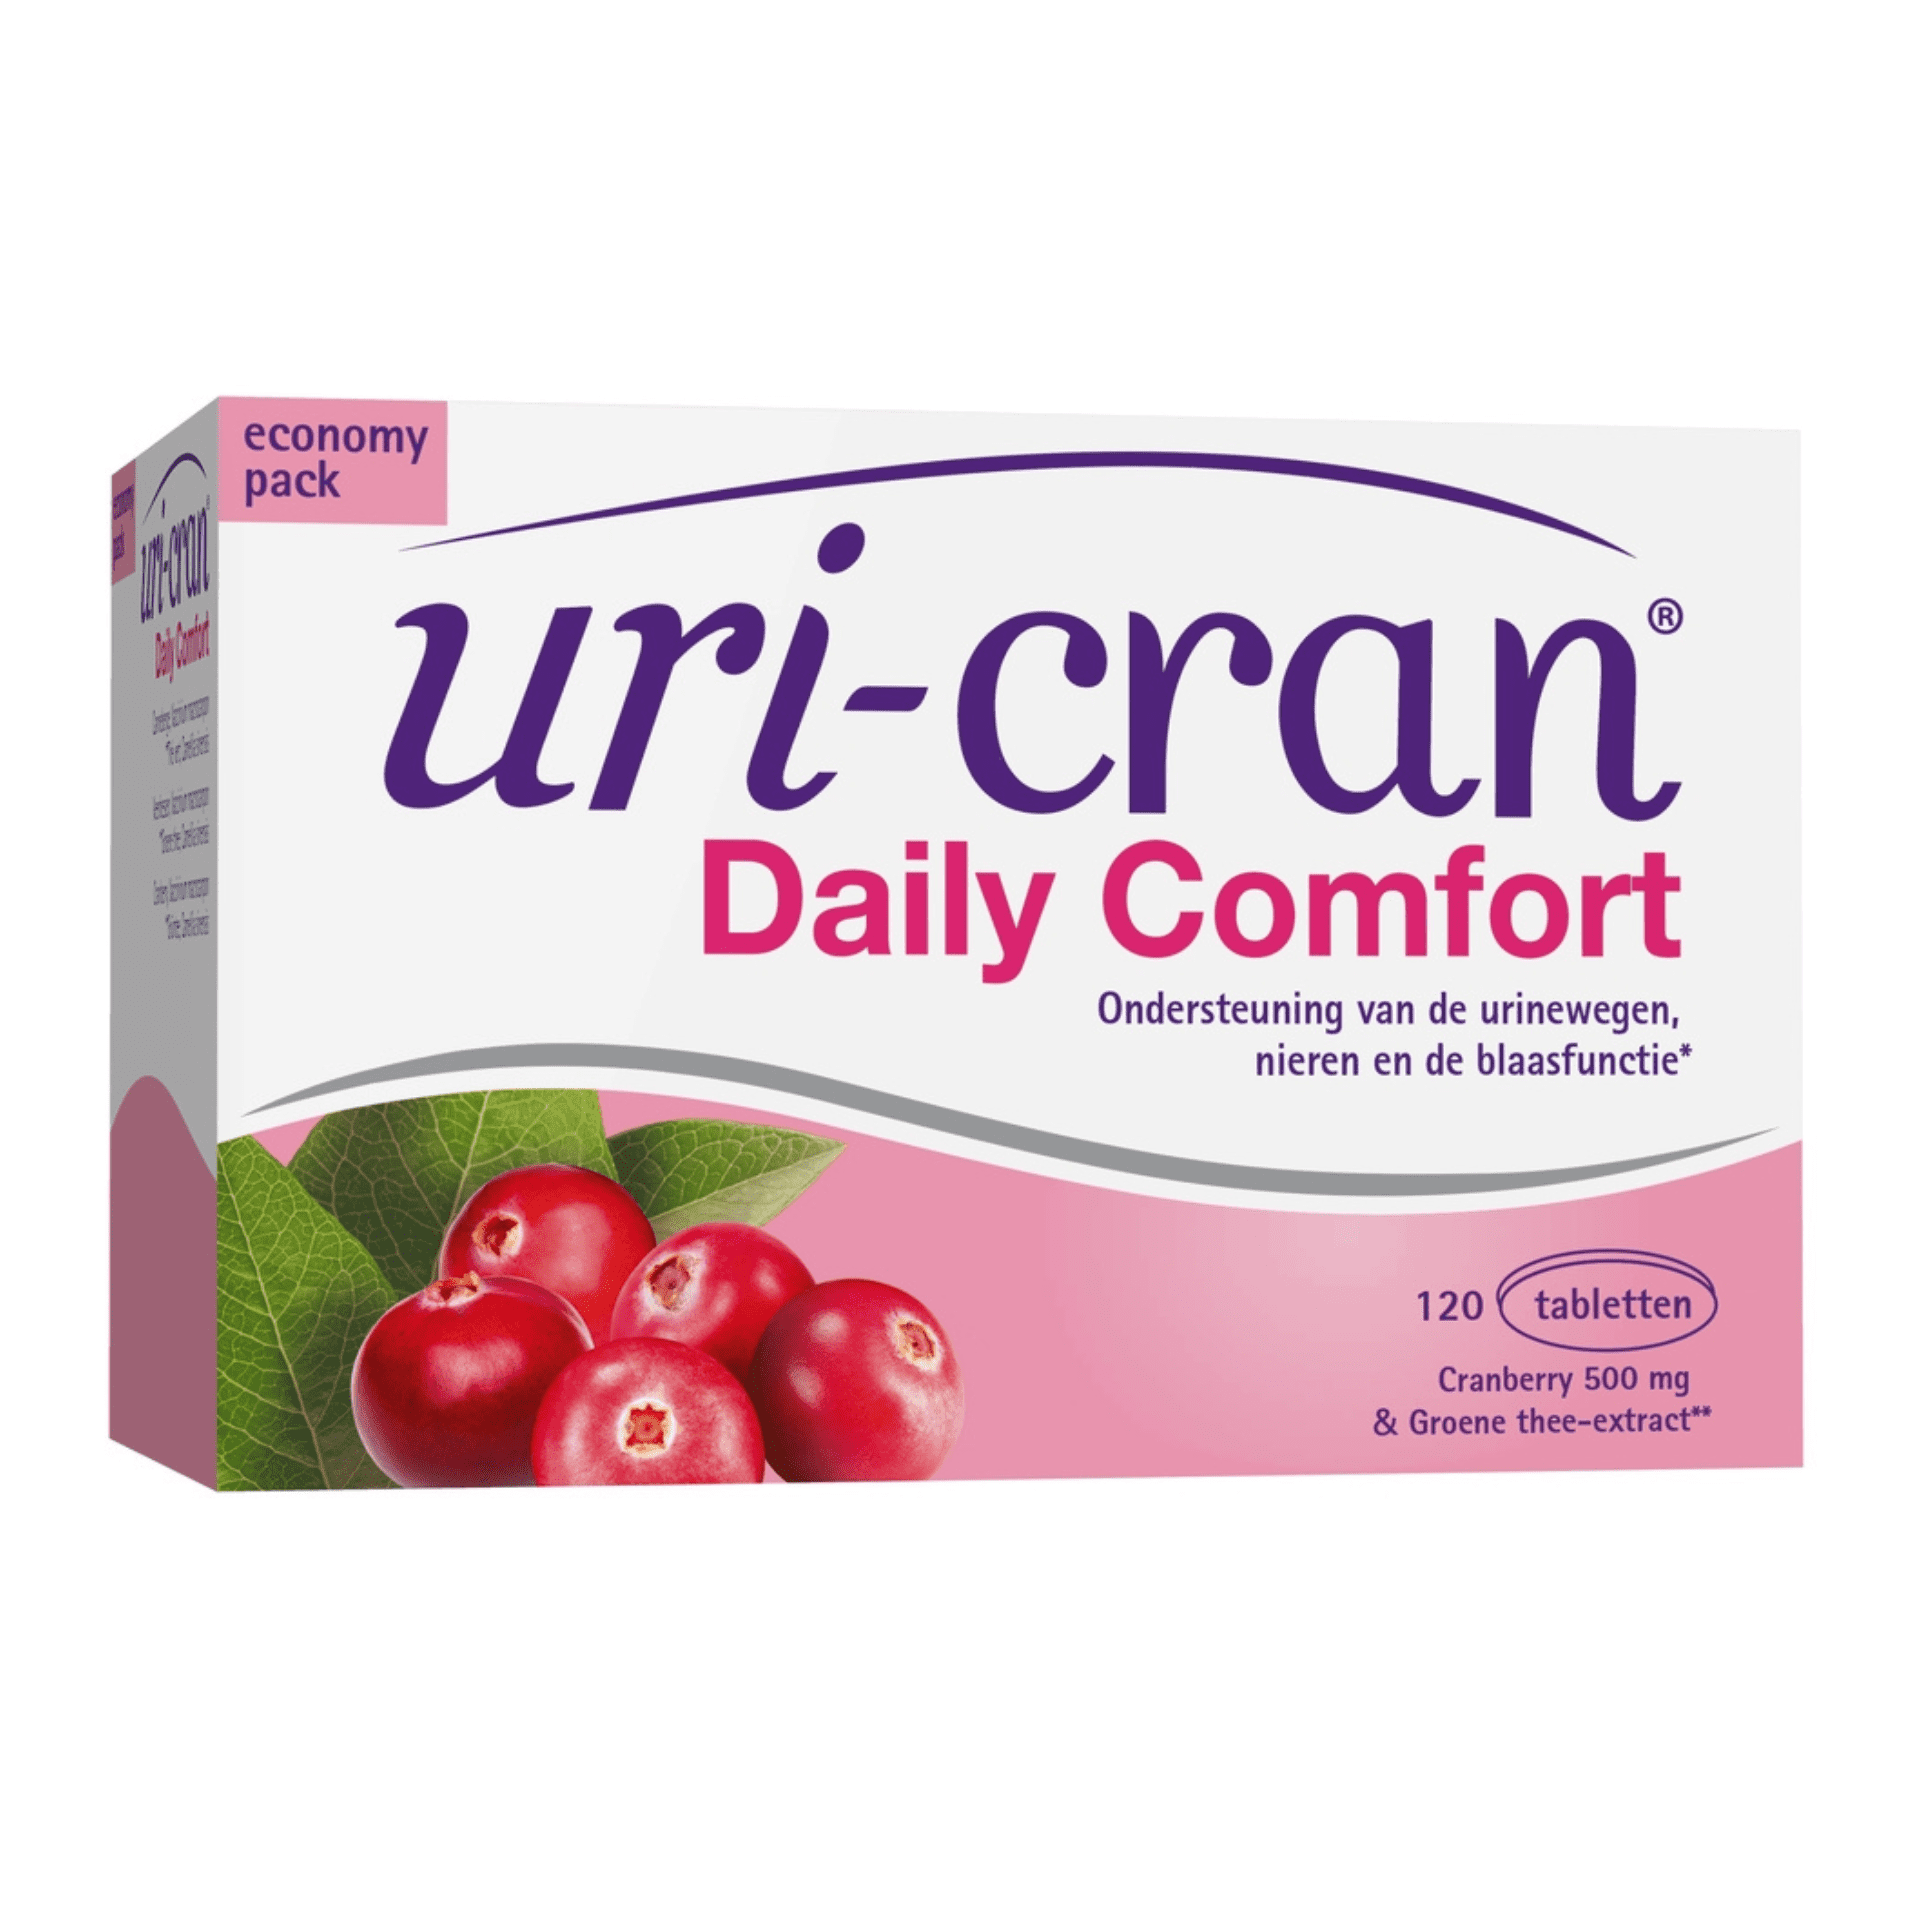 Uri-cran Daily Comfort Comp 120